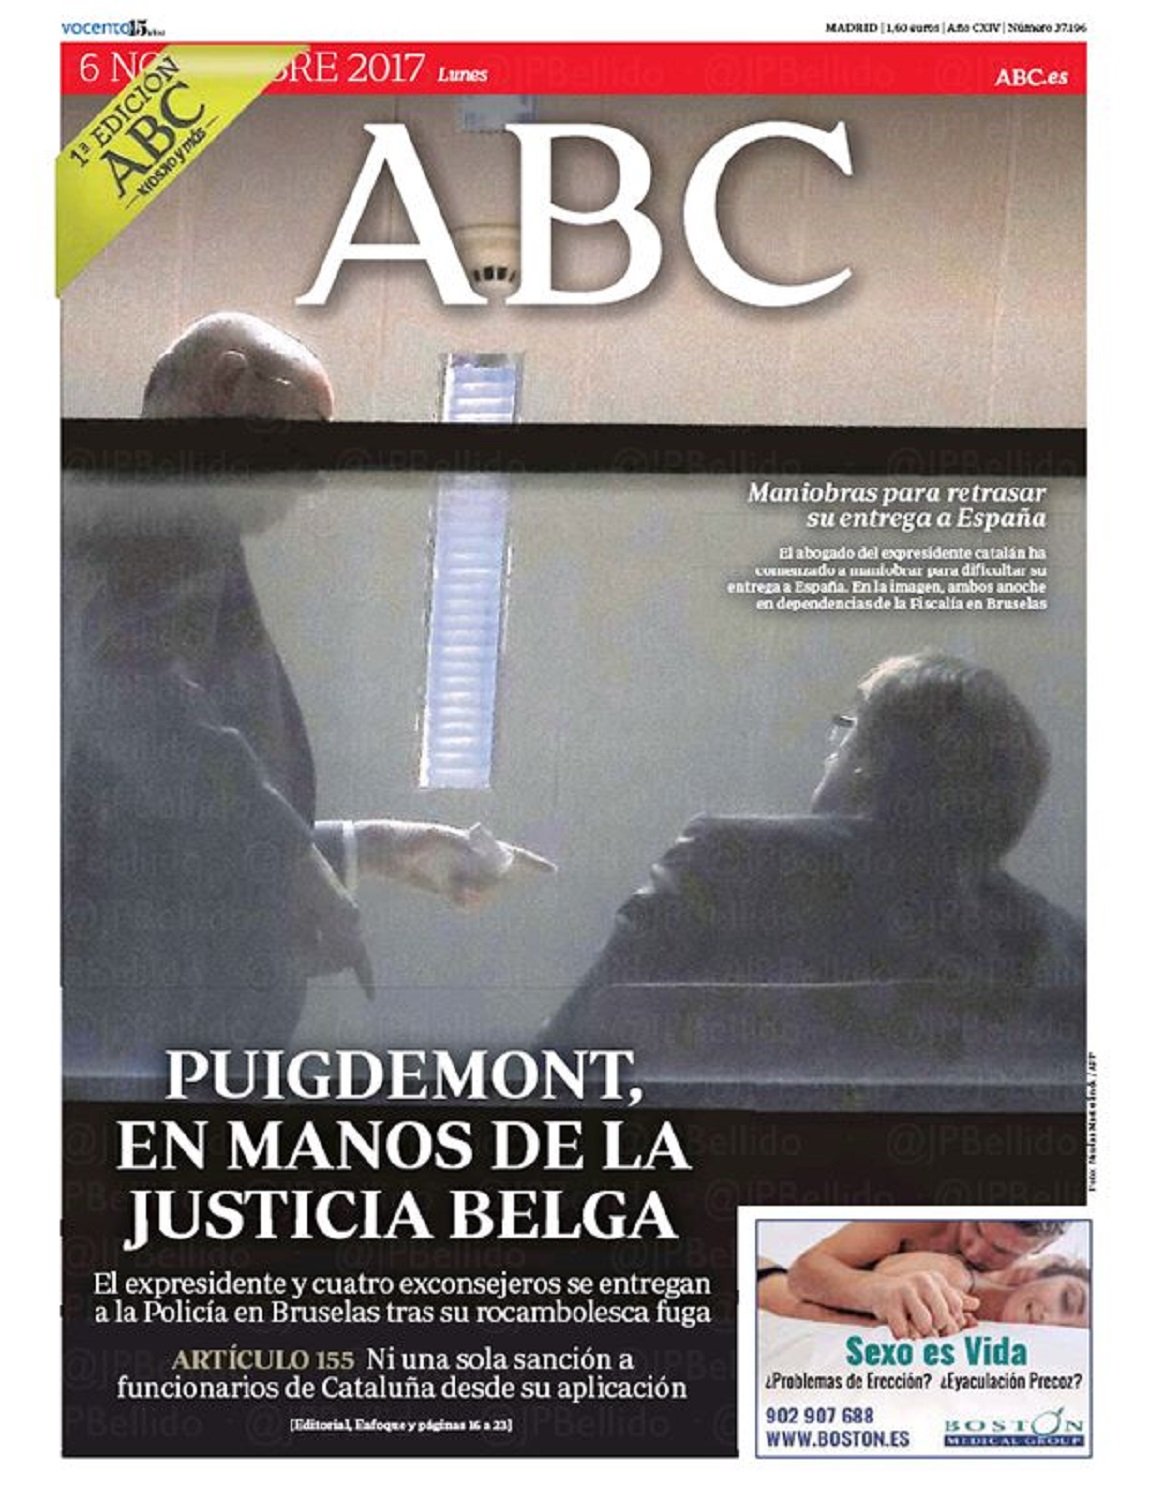 Els diaris de Madrid passen per alt la llibertat de Puigdemont i els consellers